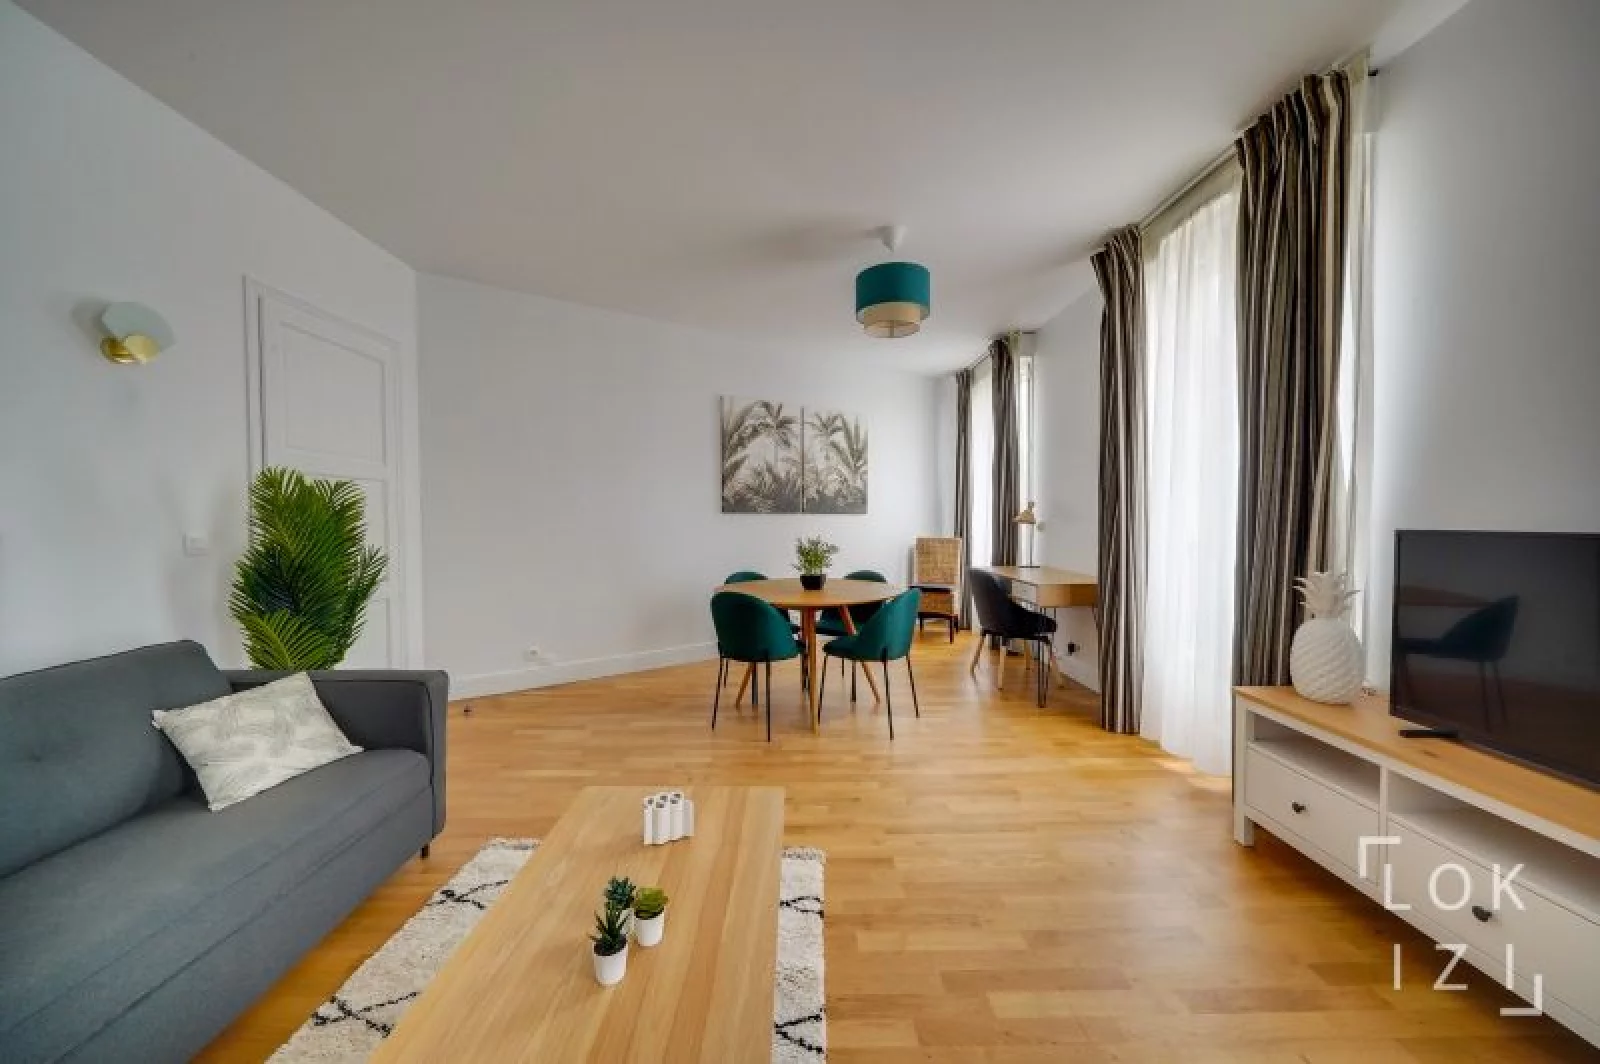 Location appartement meublé 2 pièces 61m² (Bordeaux centre - Gambetta)